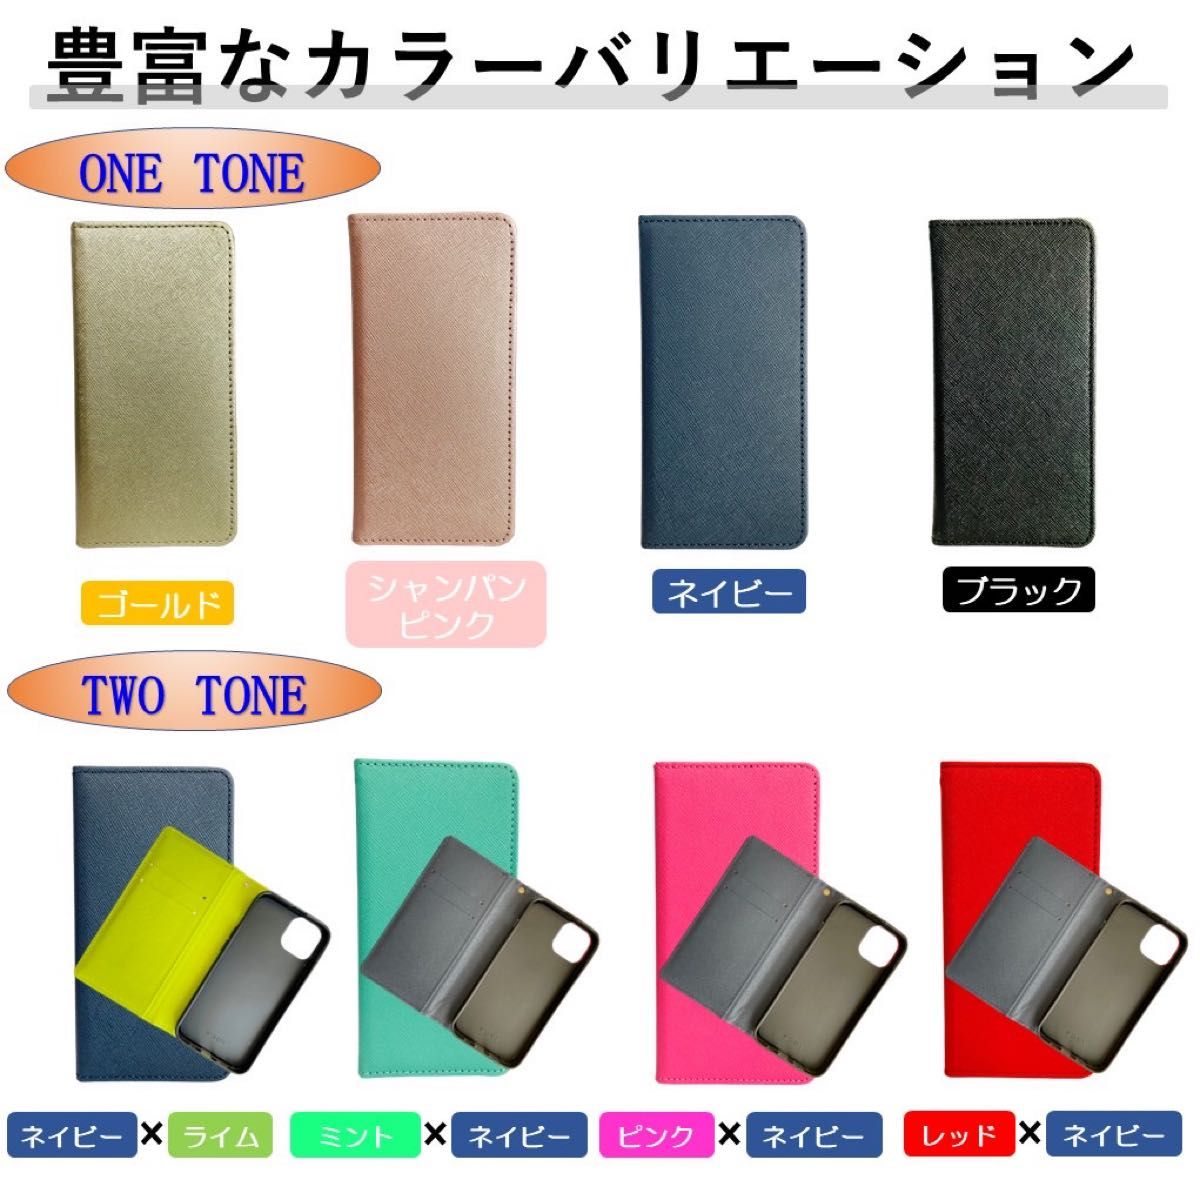 iPhone 14 アイフォン 手帳型 スマホカバー スマホケース レザー風 ミント ブルー カードポケット シンプル オシャレ